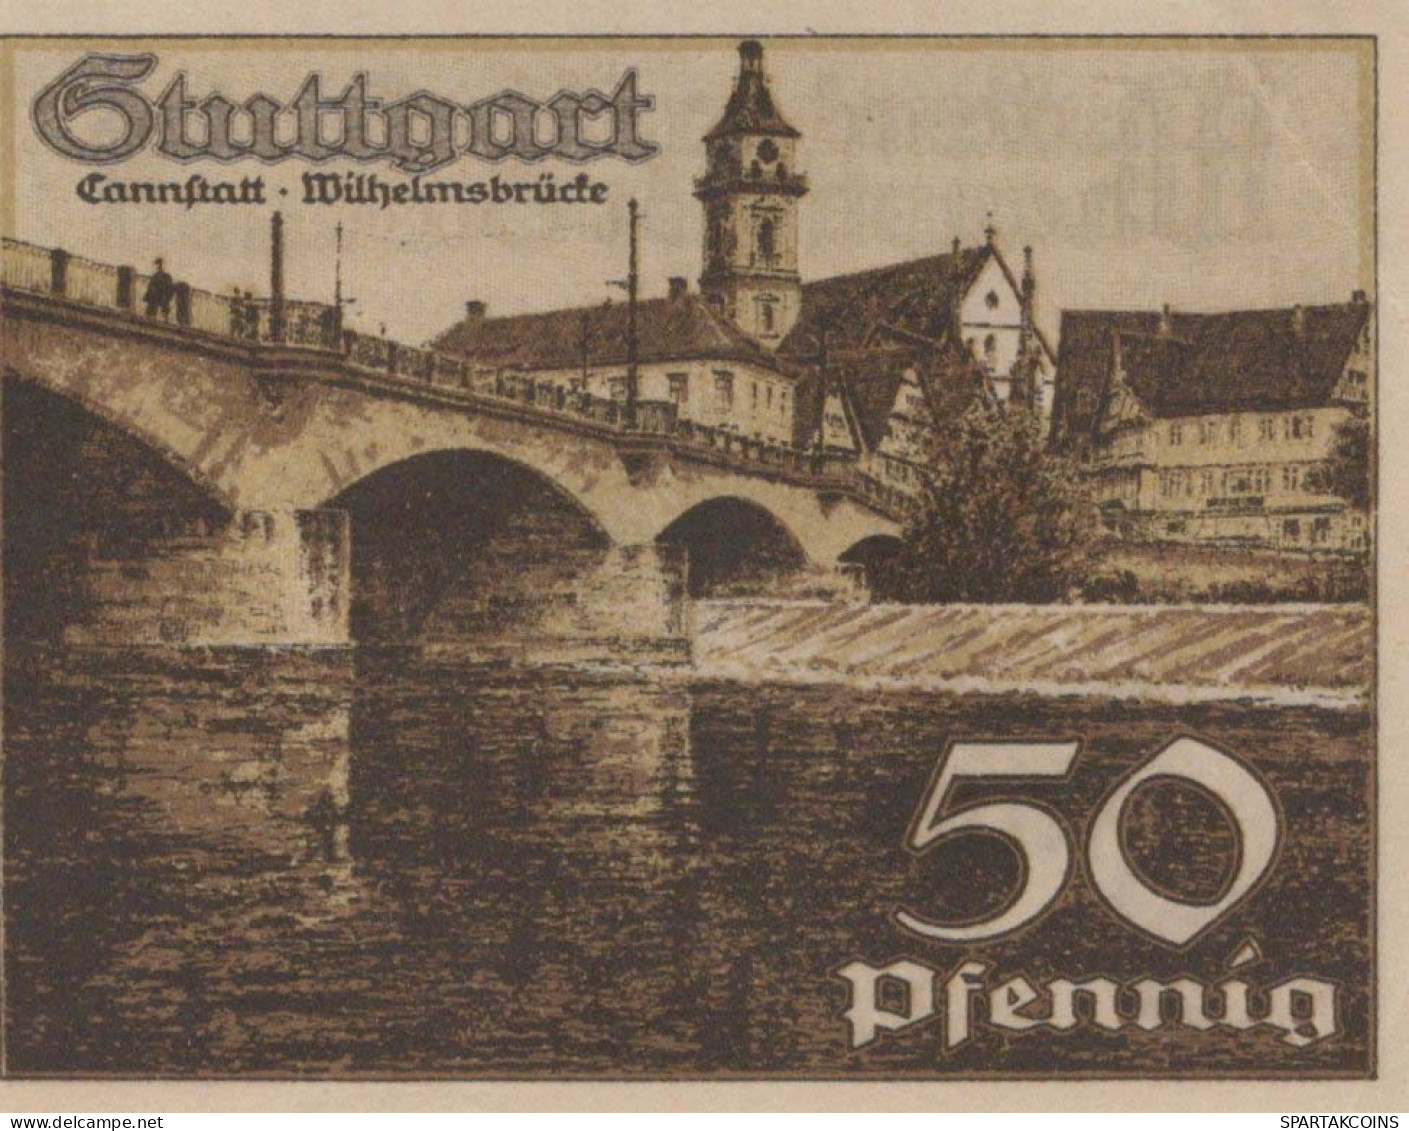 50 PFENNIG 1921 Stadt STUTTGART Württemberg UNC DEUTSCHLAND Notgeld #PC422 - [11] Emissioni Locali